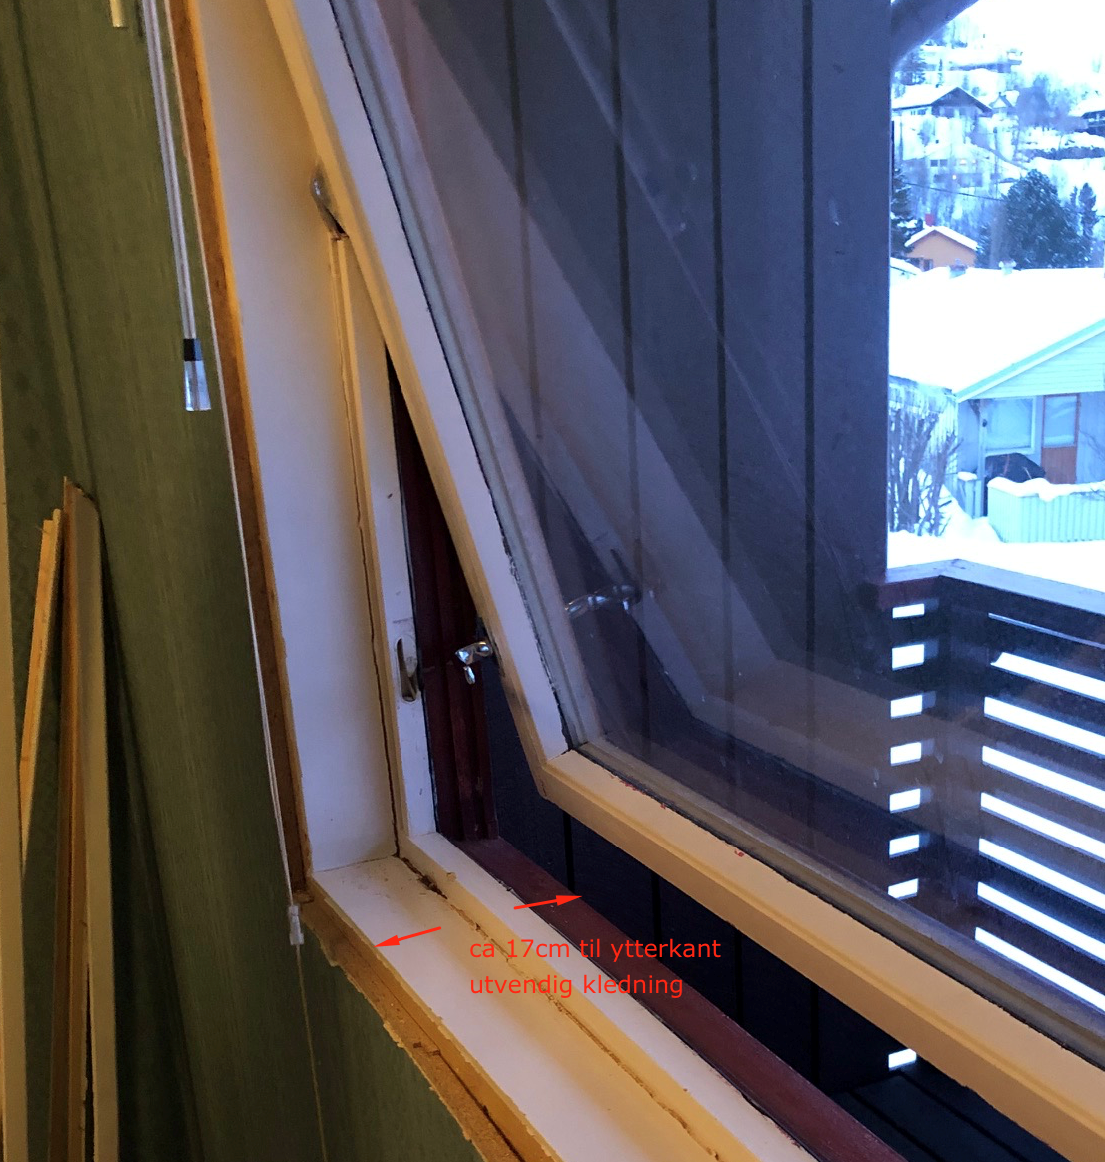 Sette inn nytt vindu i gammelt Block Watne hus - Skjermbilde 2019-03-19 kl. 12.03.02.png - Logodesignerne